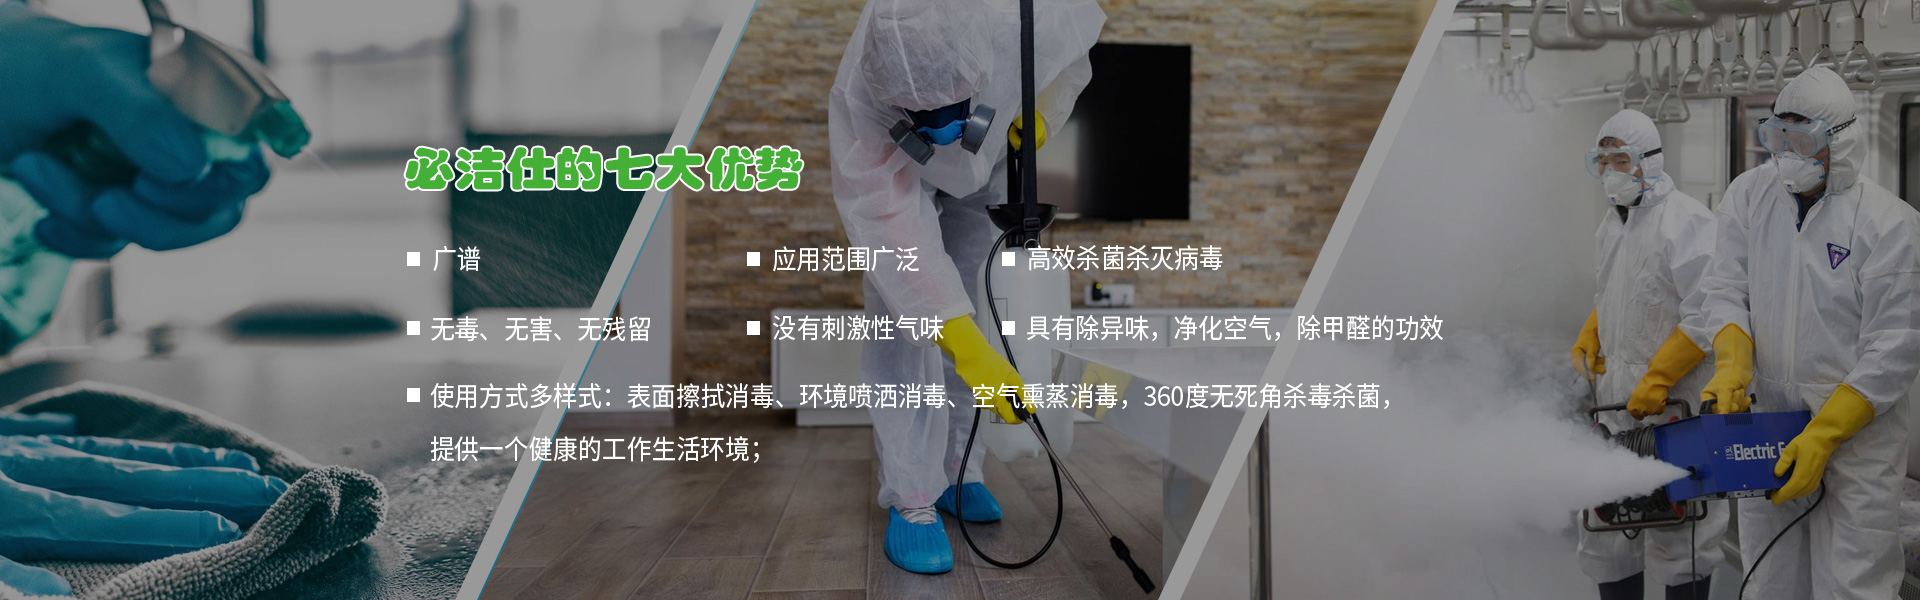 北京消毒劑、空氣消毒劑、二氧化氯消毒劑、冷鏈消毒劑、消毒劑、環境消毒液ban3